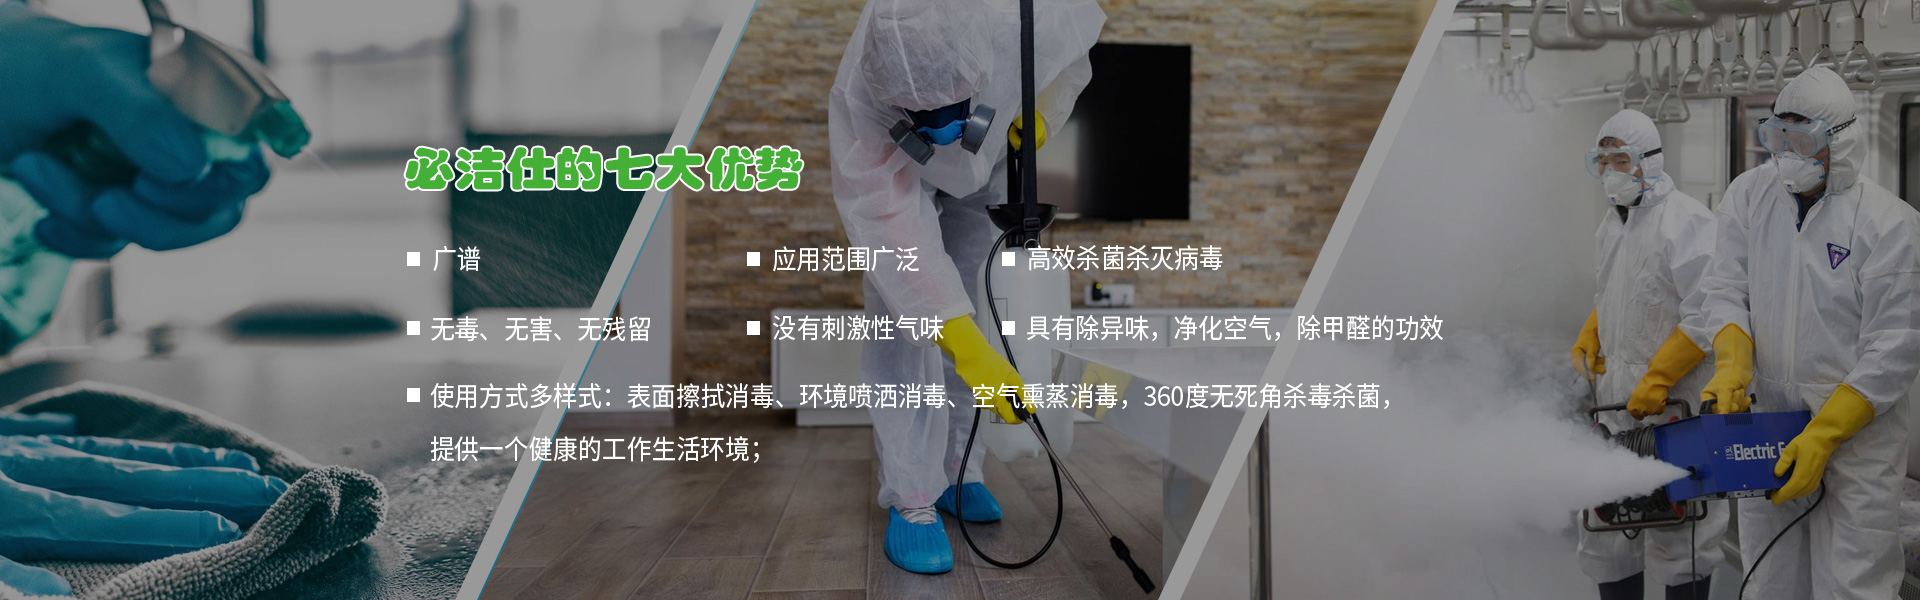 北京消毒劑、空氣消毒劑、二氧化氯消毒劑、冷鏈消毒劑、消毒劑、環境消毒液ban3